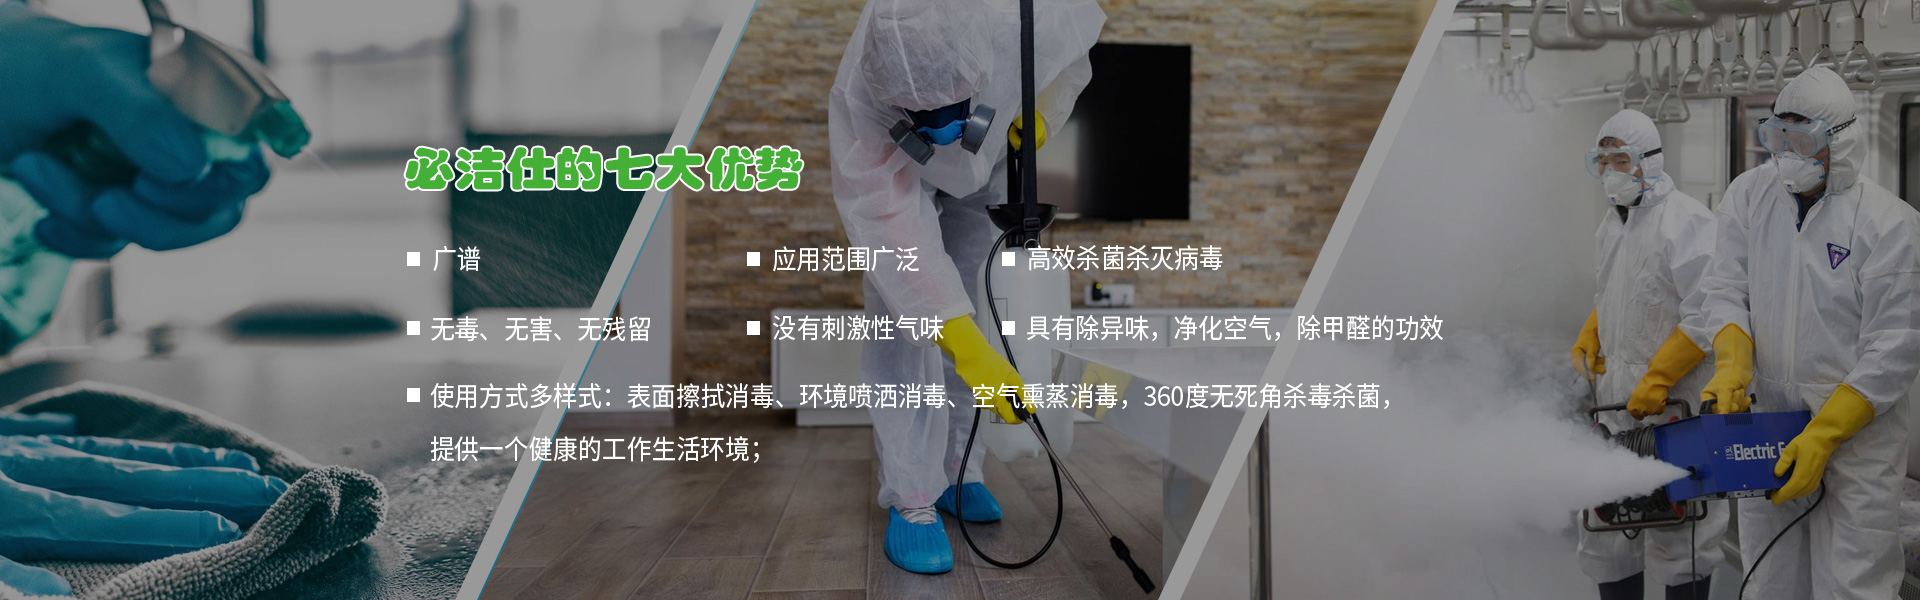 北京消毒劑、空氣消毒劑、二氧化氯消毒劑、冷鏈消毒劑、消毒劑、環境消毒液ban3